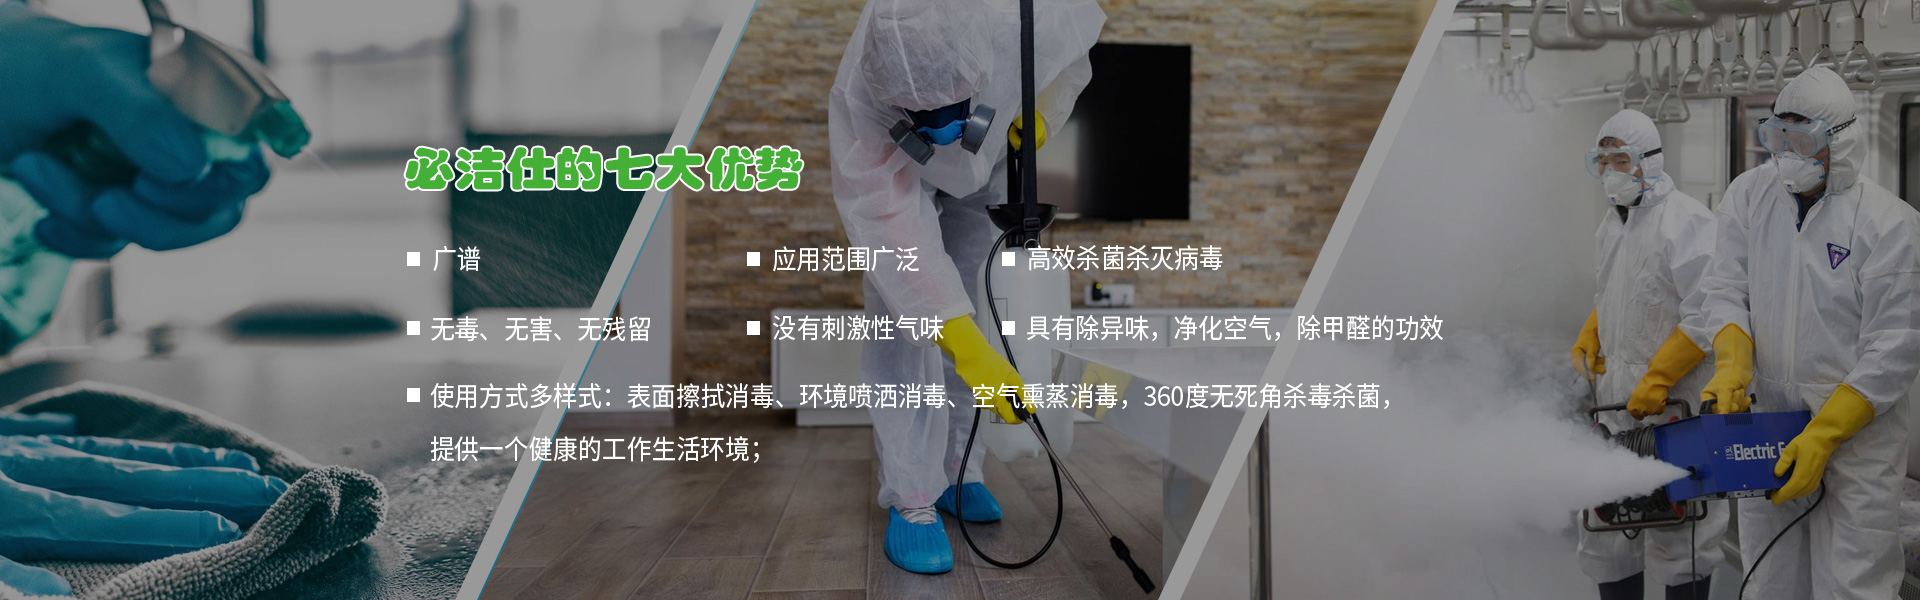 北京消毒劑、空氣消毒劑、二氧化氯消毒劑、冷鏈消毒劑、消毒劑、環境消毒液ban3